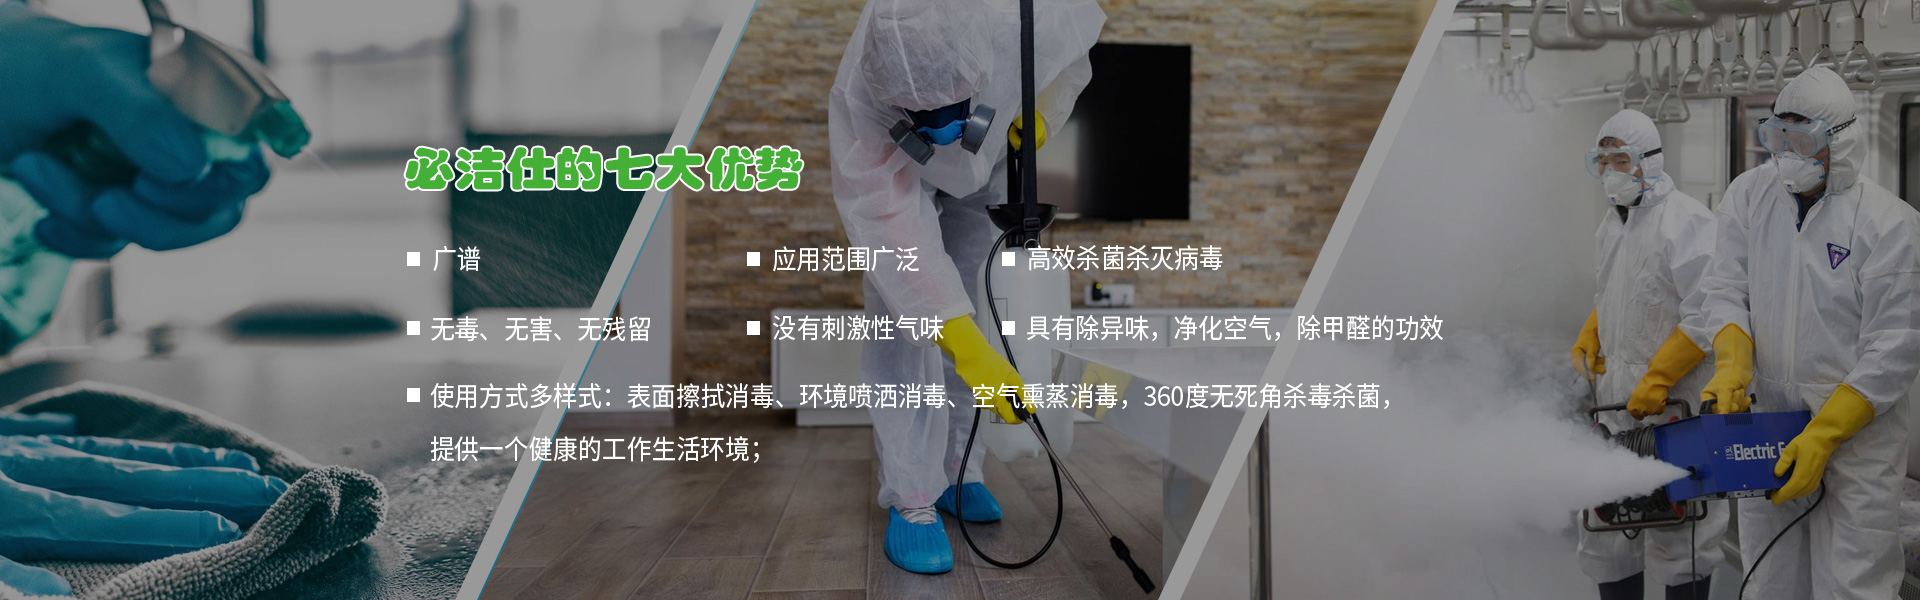 北京消毒劑、空氣消毒劑、二氧化氯消毒劑、冷鏈消毒劑、消毒劑、環境消毒液ban3